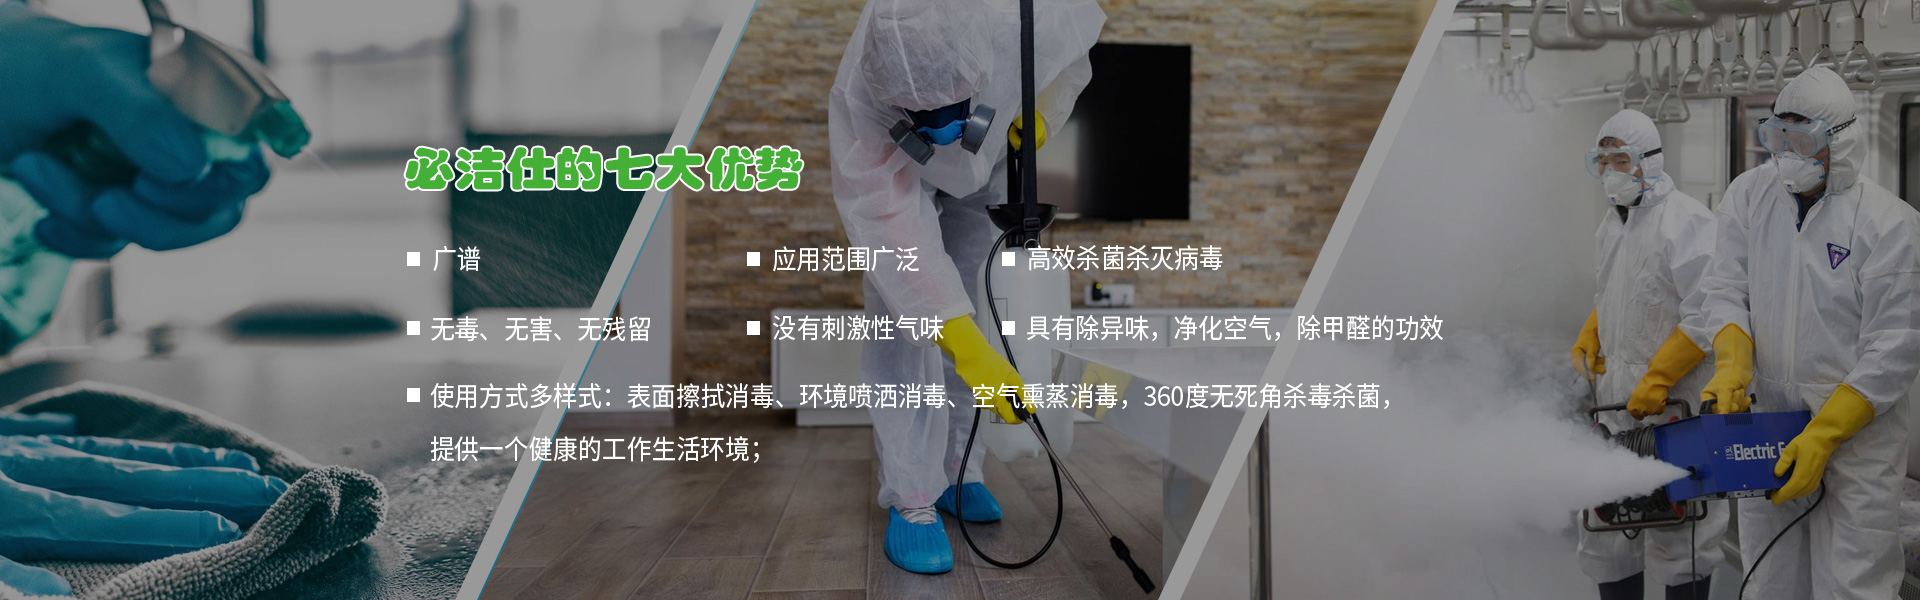 北京消毒劑、空氣消毒劑、二氧化氯消毒劑、冷鏈消毒劑、消毒劑、環境消毒液ban3